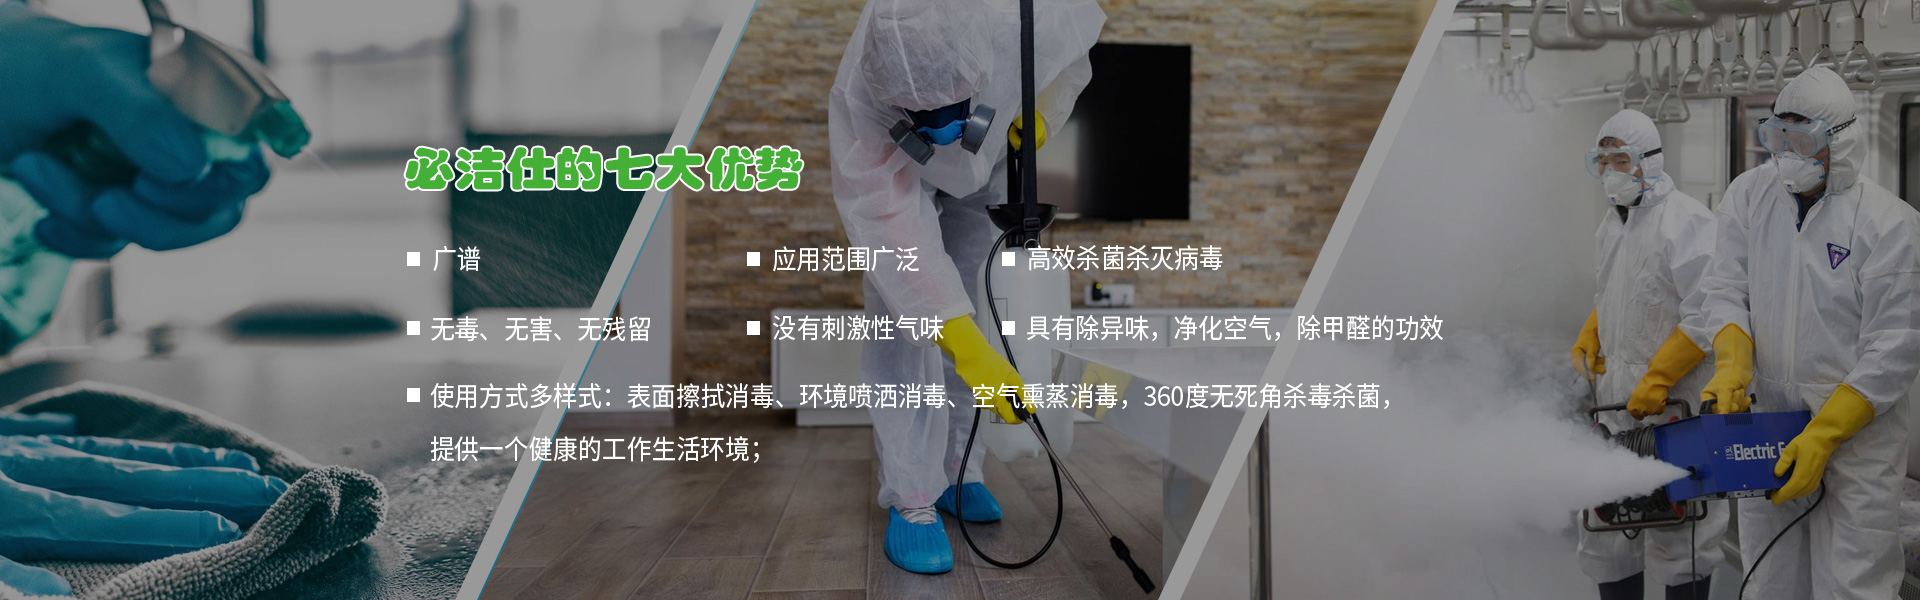 北京消毒劑、空氣消毒劑、二氧化氯消毒劑、冷鏈消毒劑、消毒劑、環境消毒液ban3